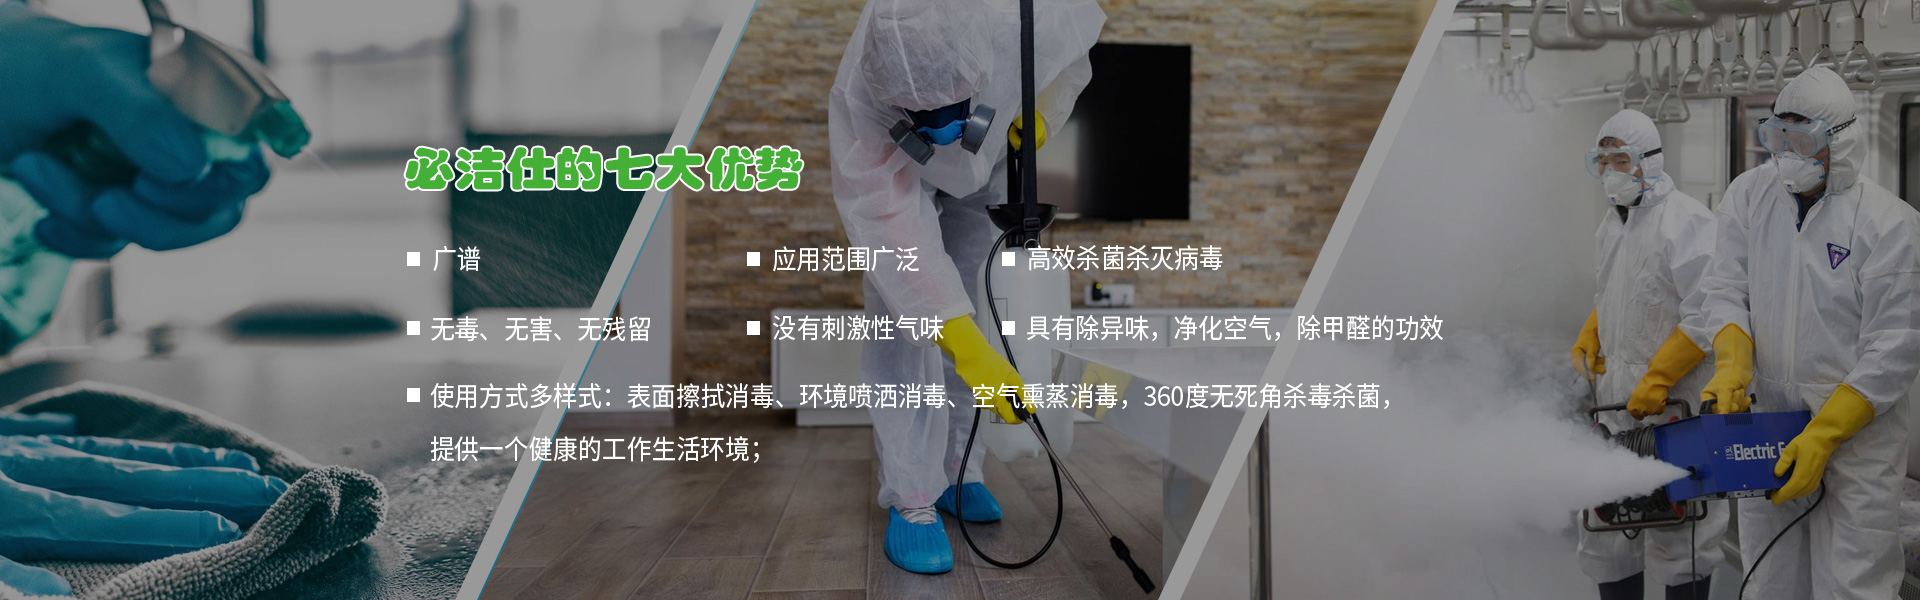 北京消毒劑、空氣消毒劑、二氧化氯消毒劑、冷鏈消毒劑、消毒劑、環境消毒液ban3